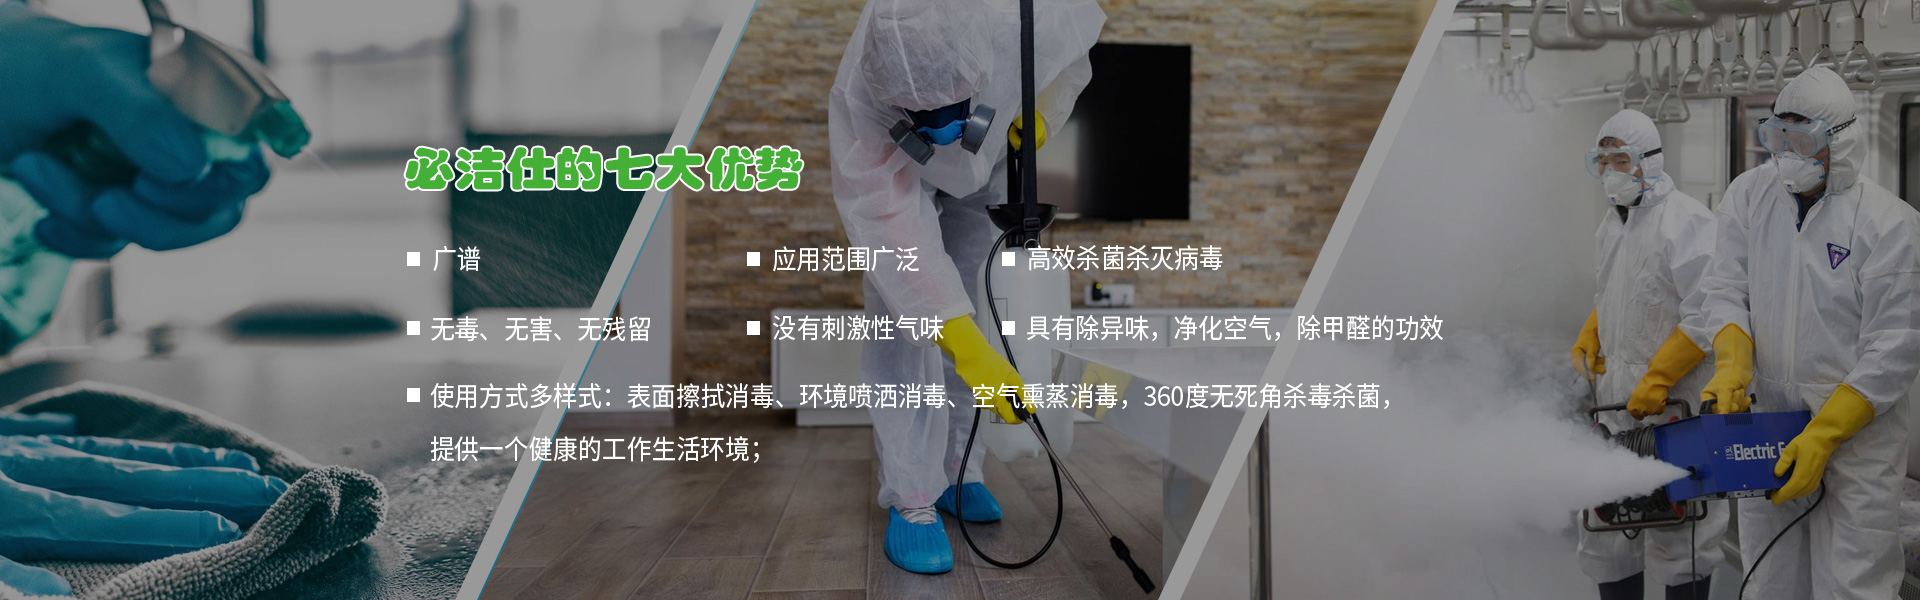 北京消毒劑、空氣消毒劑、二氧化氯消毒劑、冷鏈消毒劑、消毒劑、環境消毒液ban3